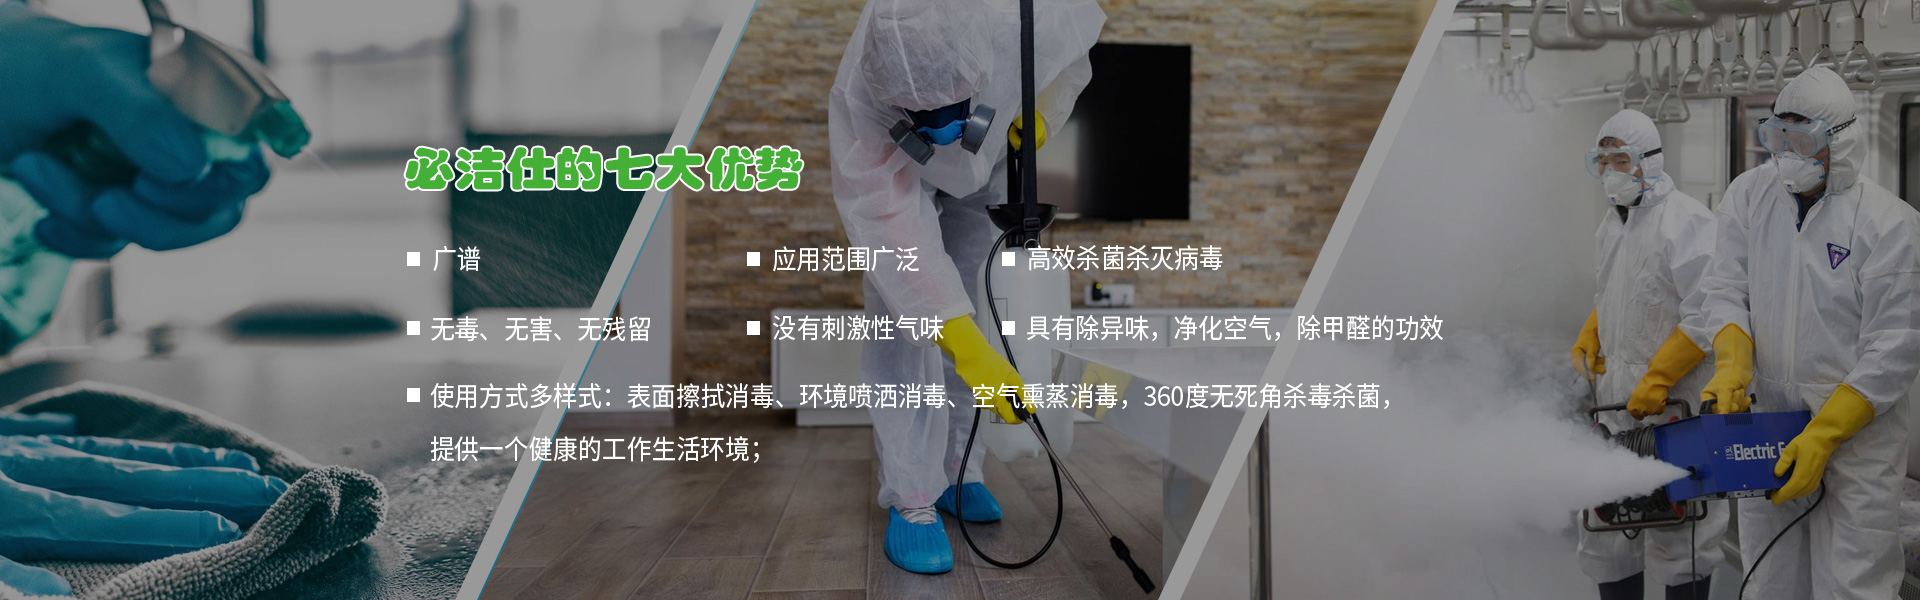 北京消毒劑、空氣消毒劑、二氧化氯消毒劑、冷鏈消毒劑、消毒劑、環境消毒液ban3